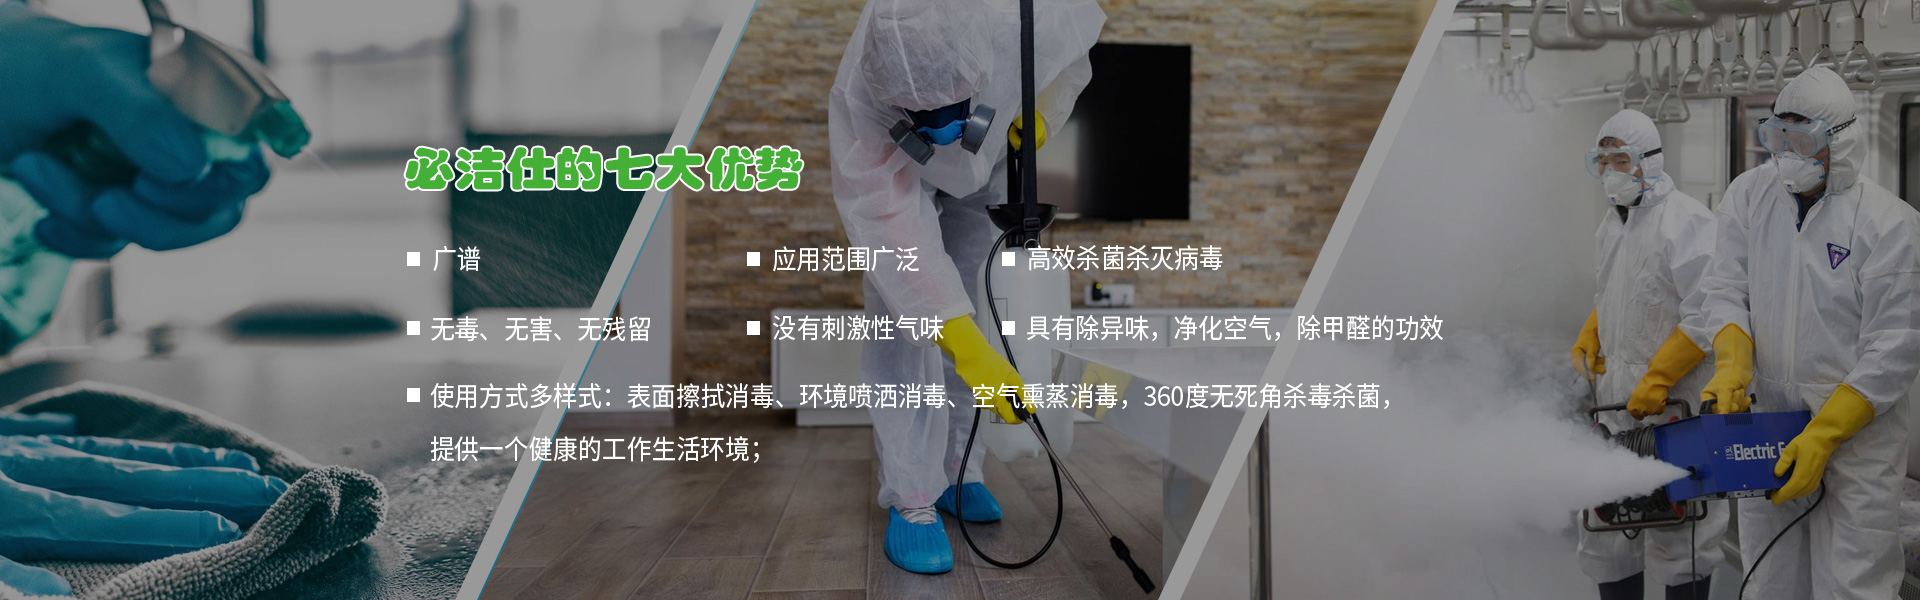 北京消毒劑、空氣消毒劑、二氧化氯消毒劑、冷鏈消毒劑、消毒劑、環境消毒液ban3